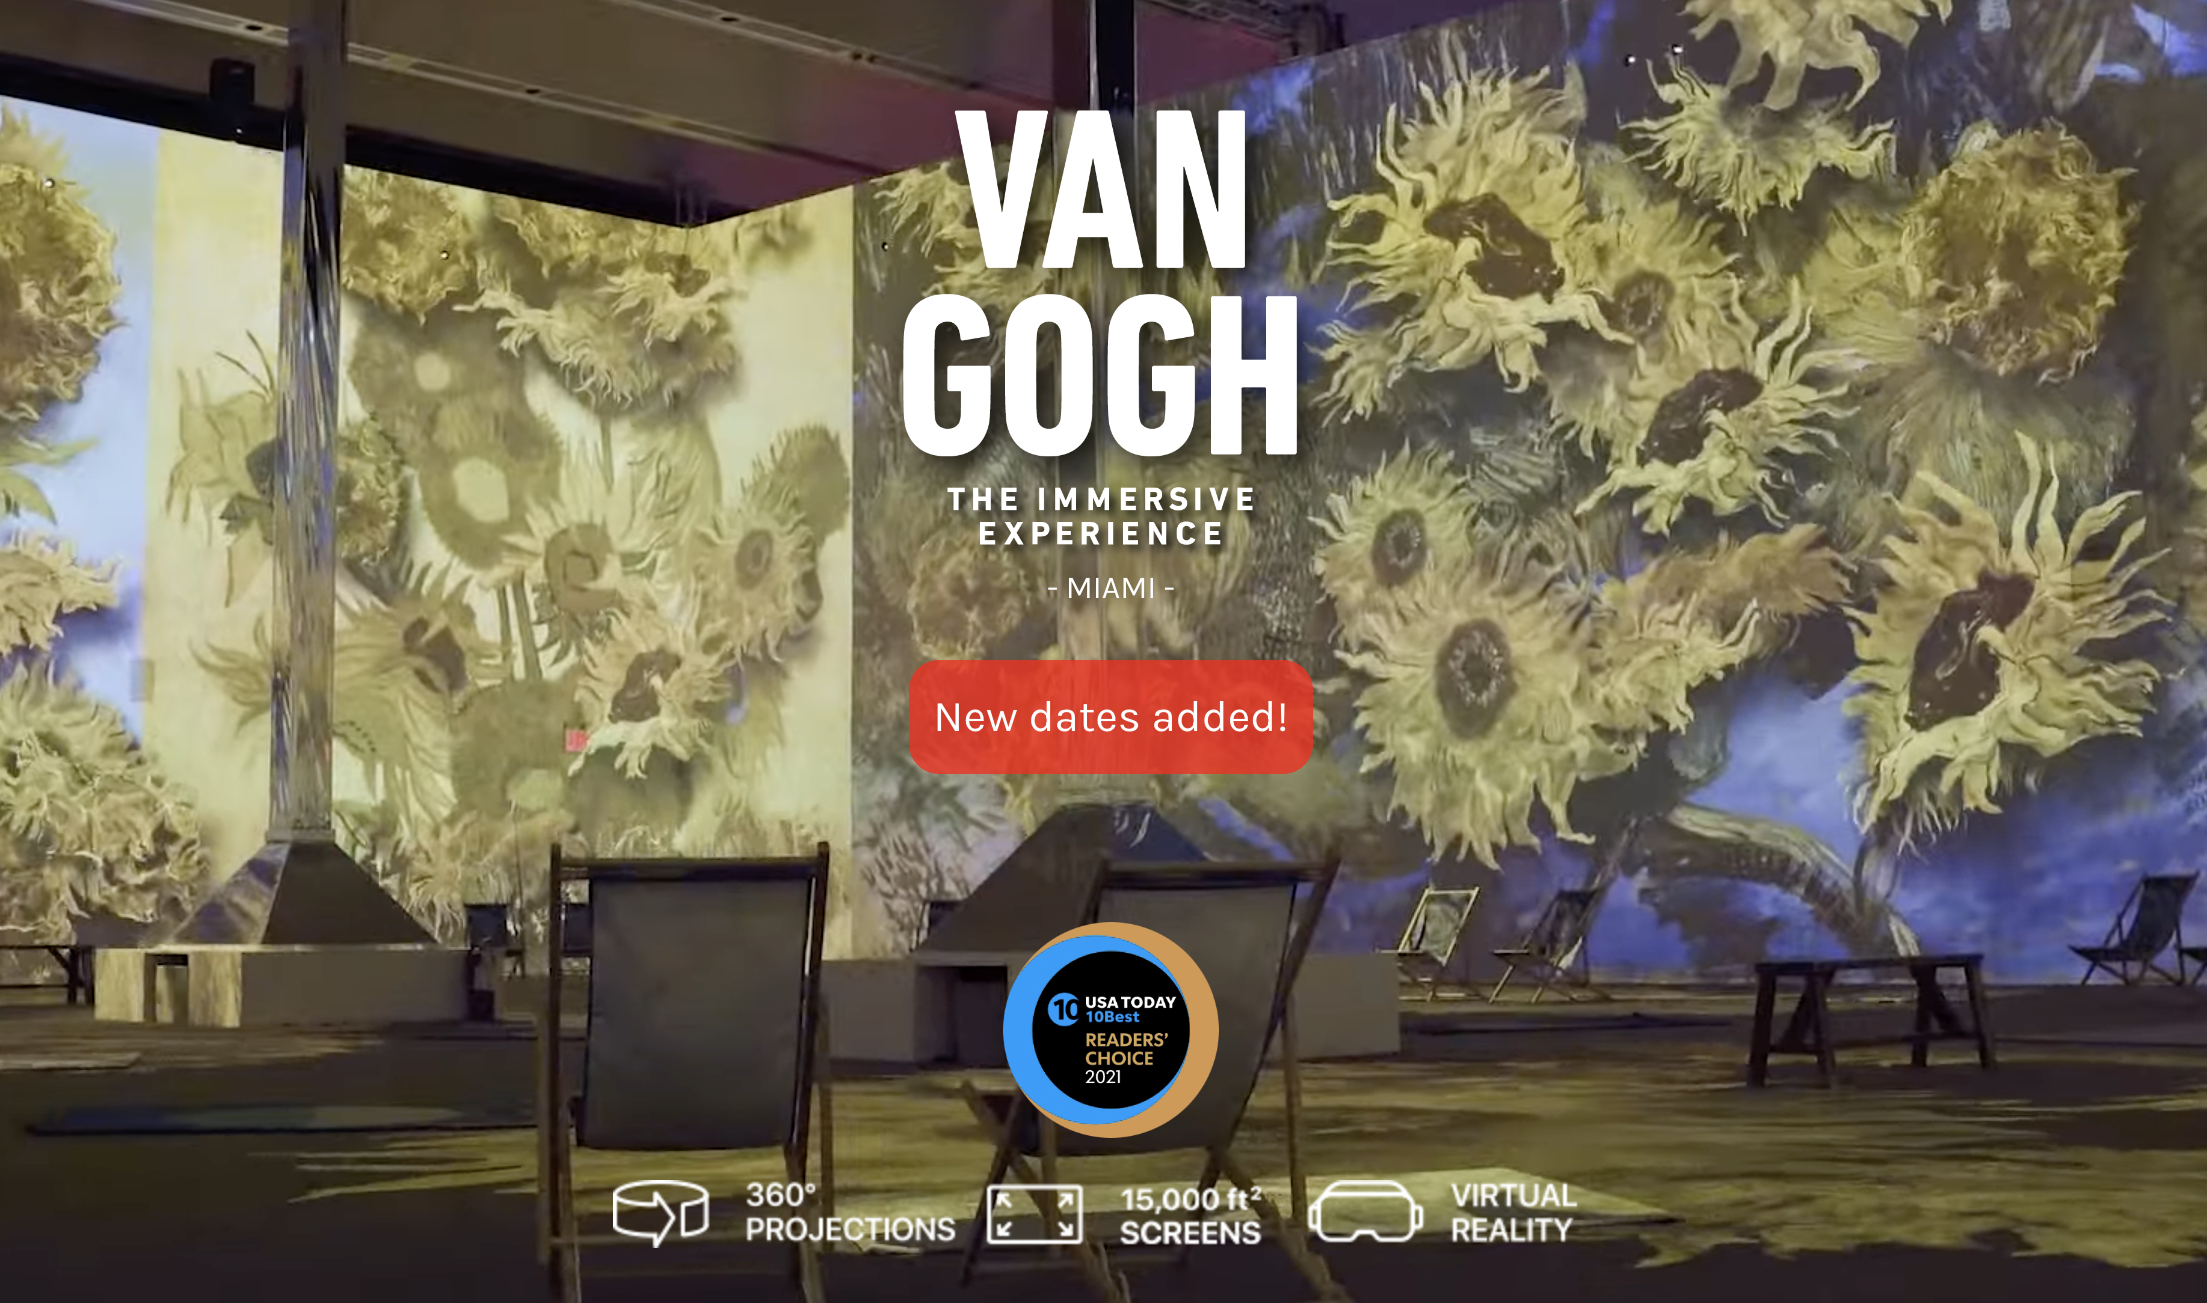 Van Gogh Exhibit Miami: The Immersive Experience